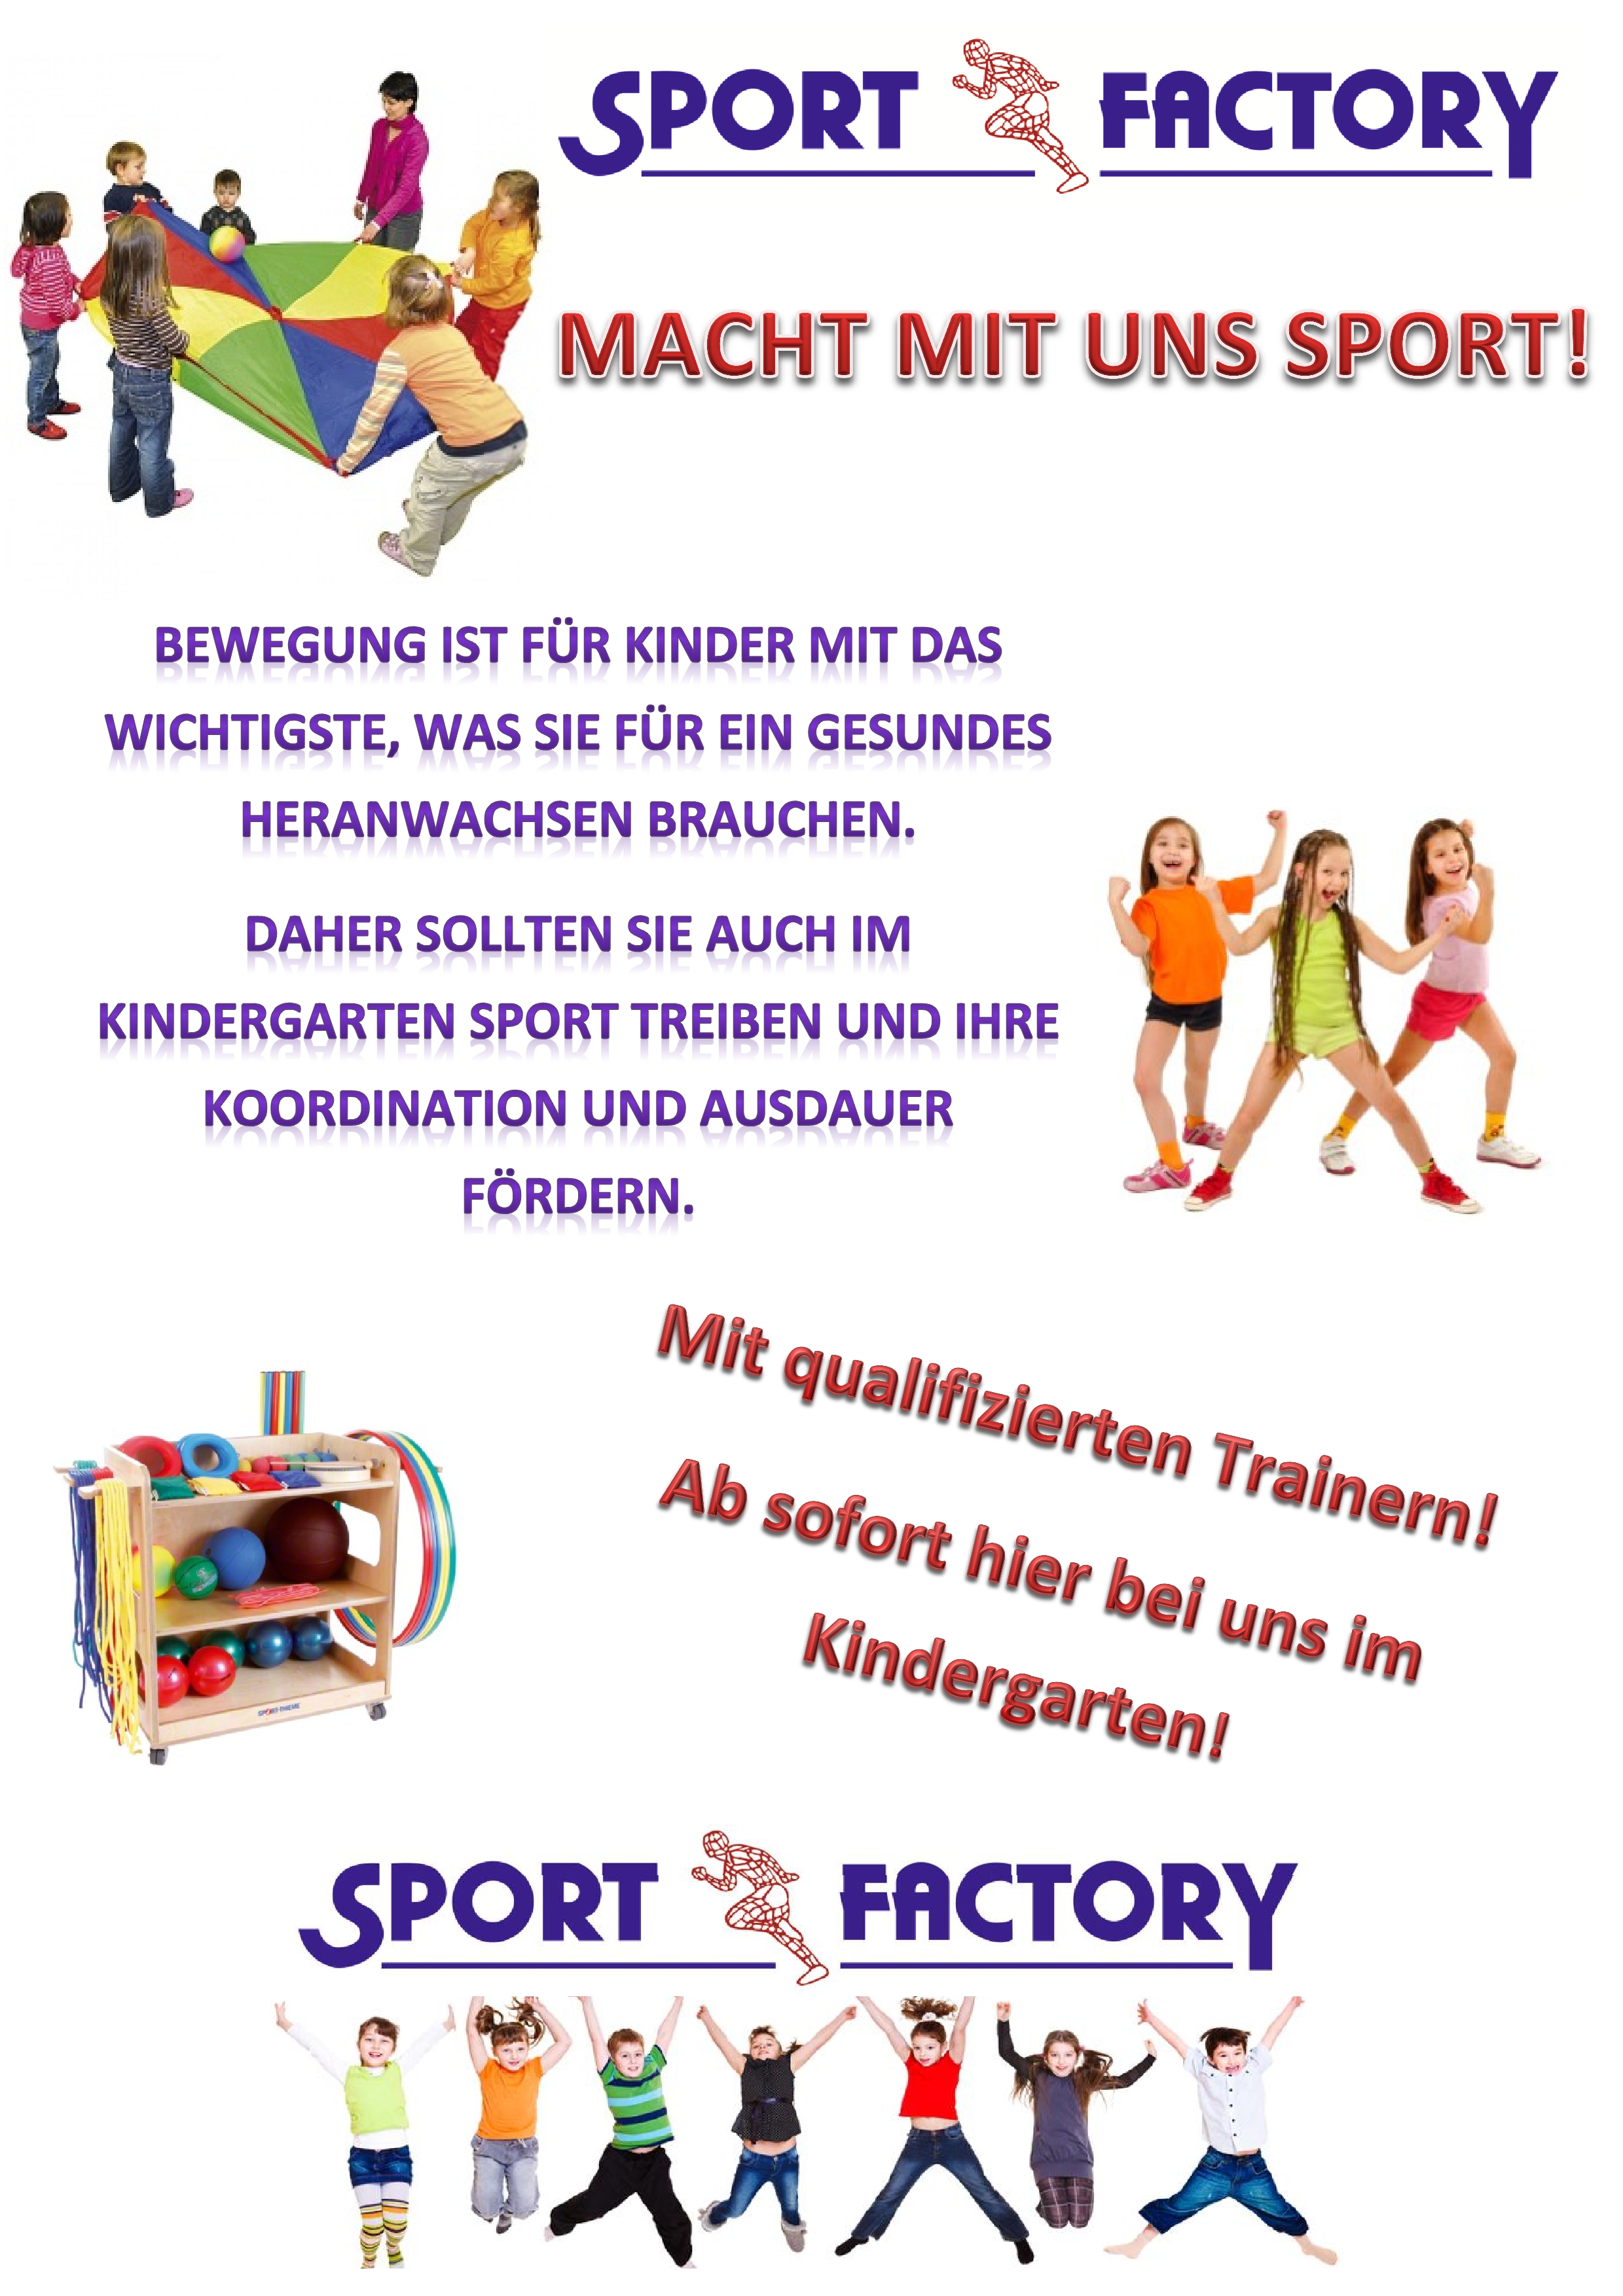 Kindergarten Sport